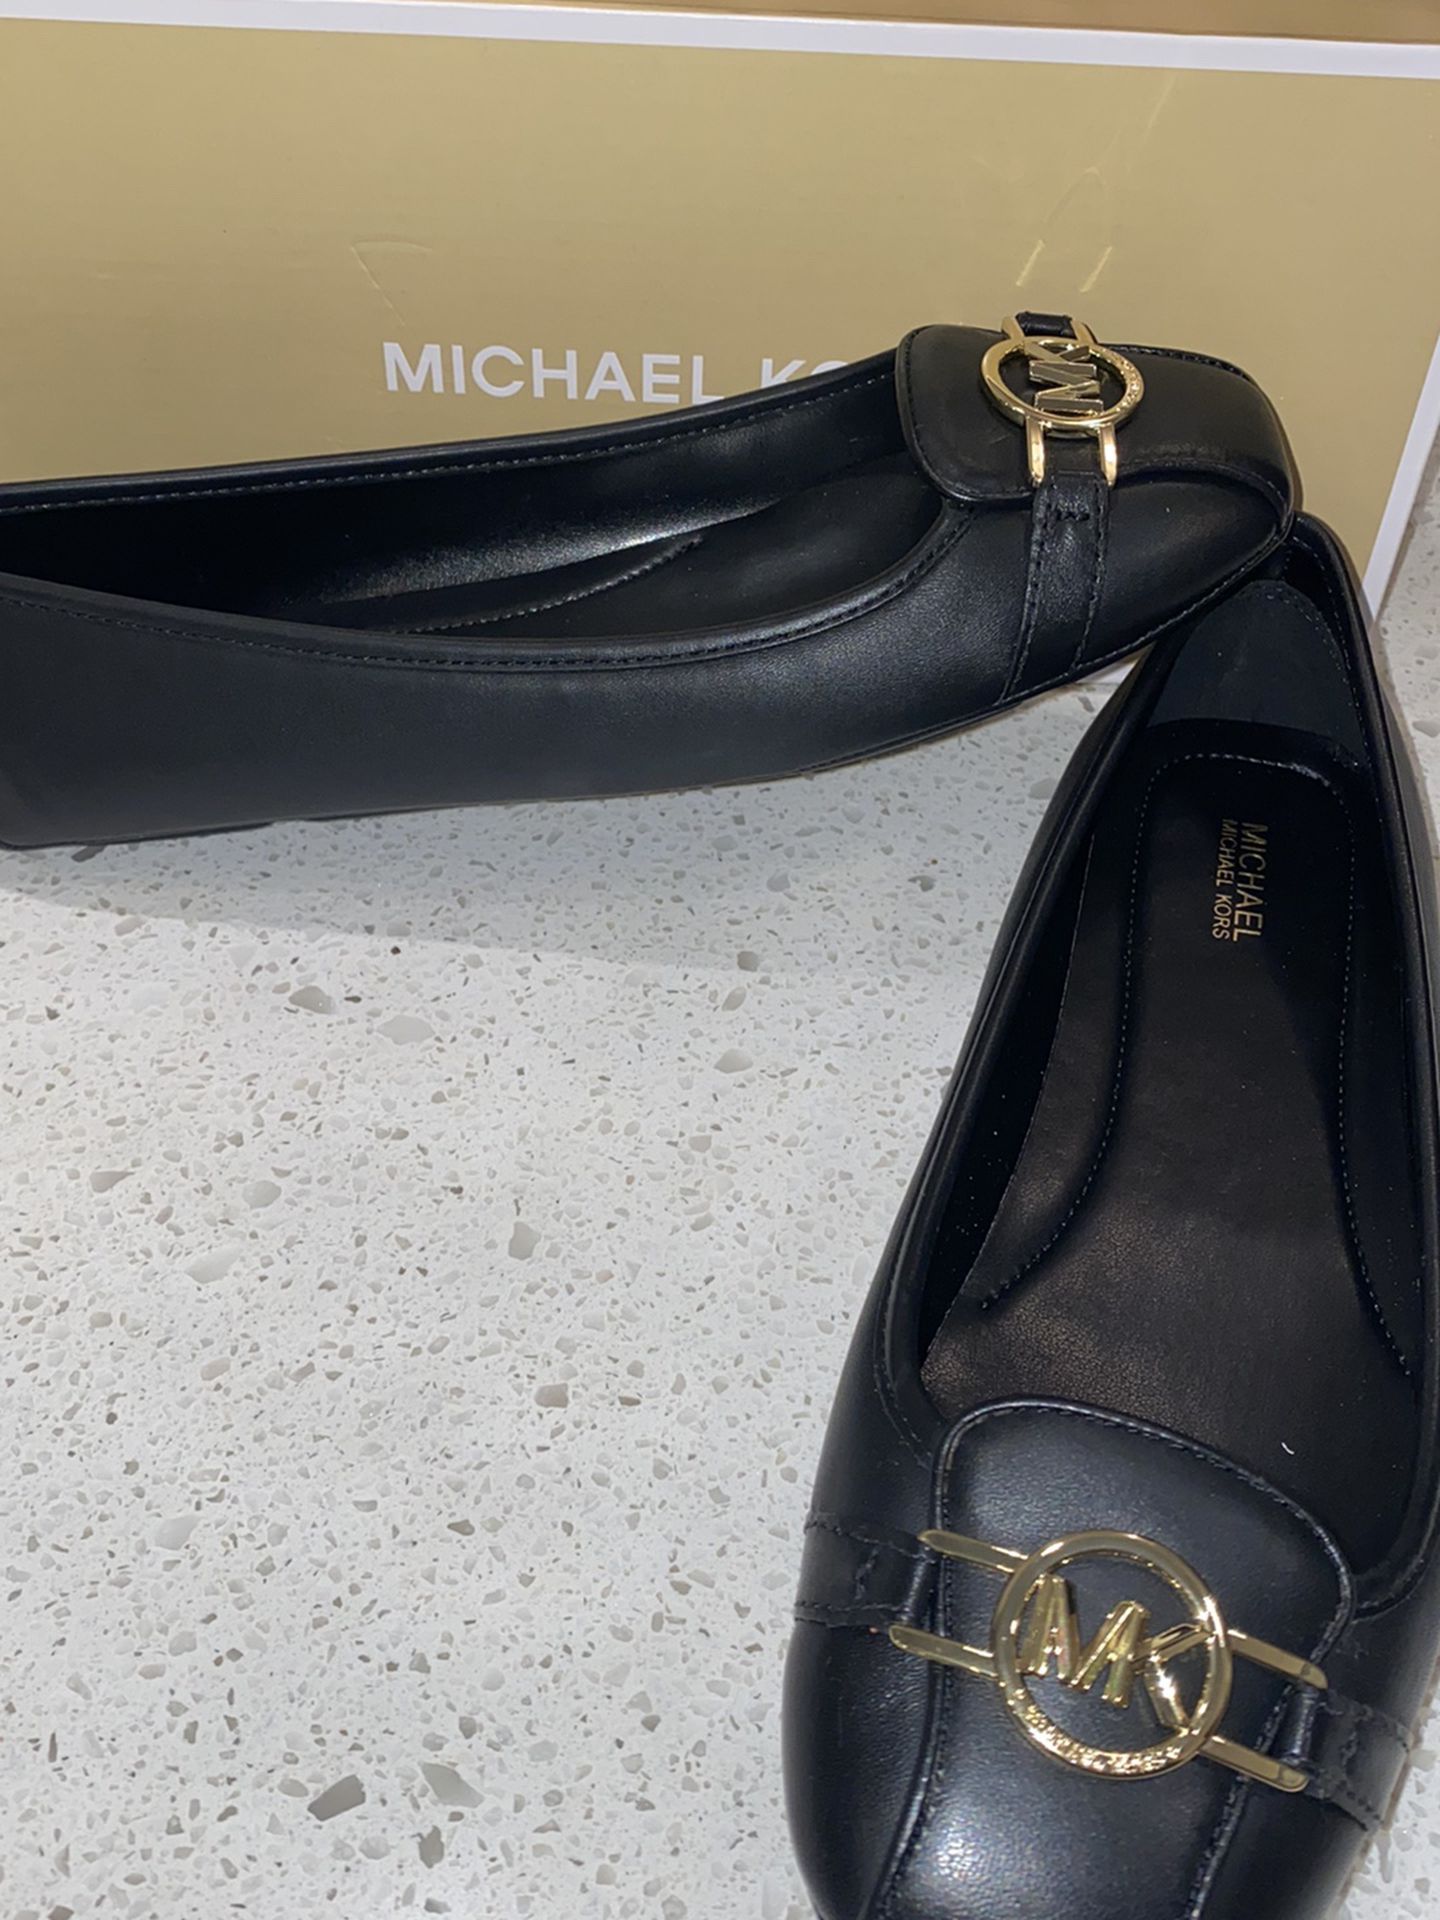 Women’s Size 10 Michael Kors Shoes